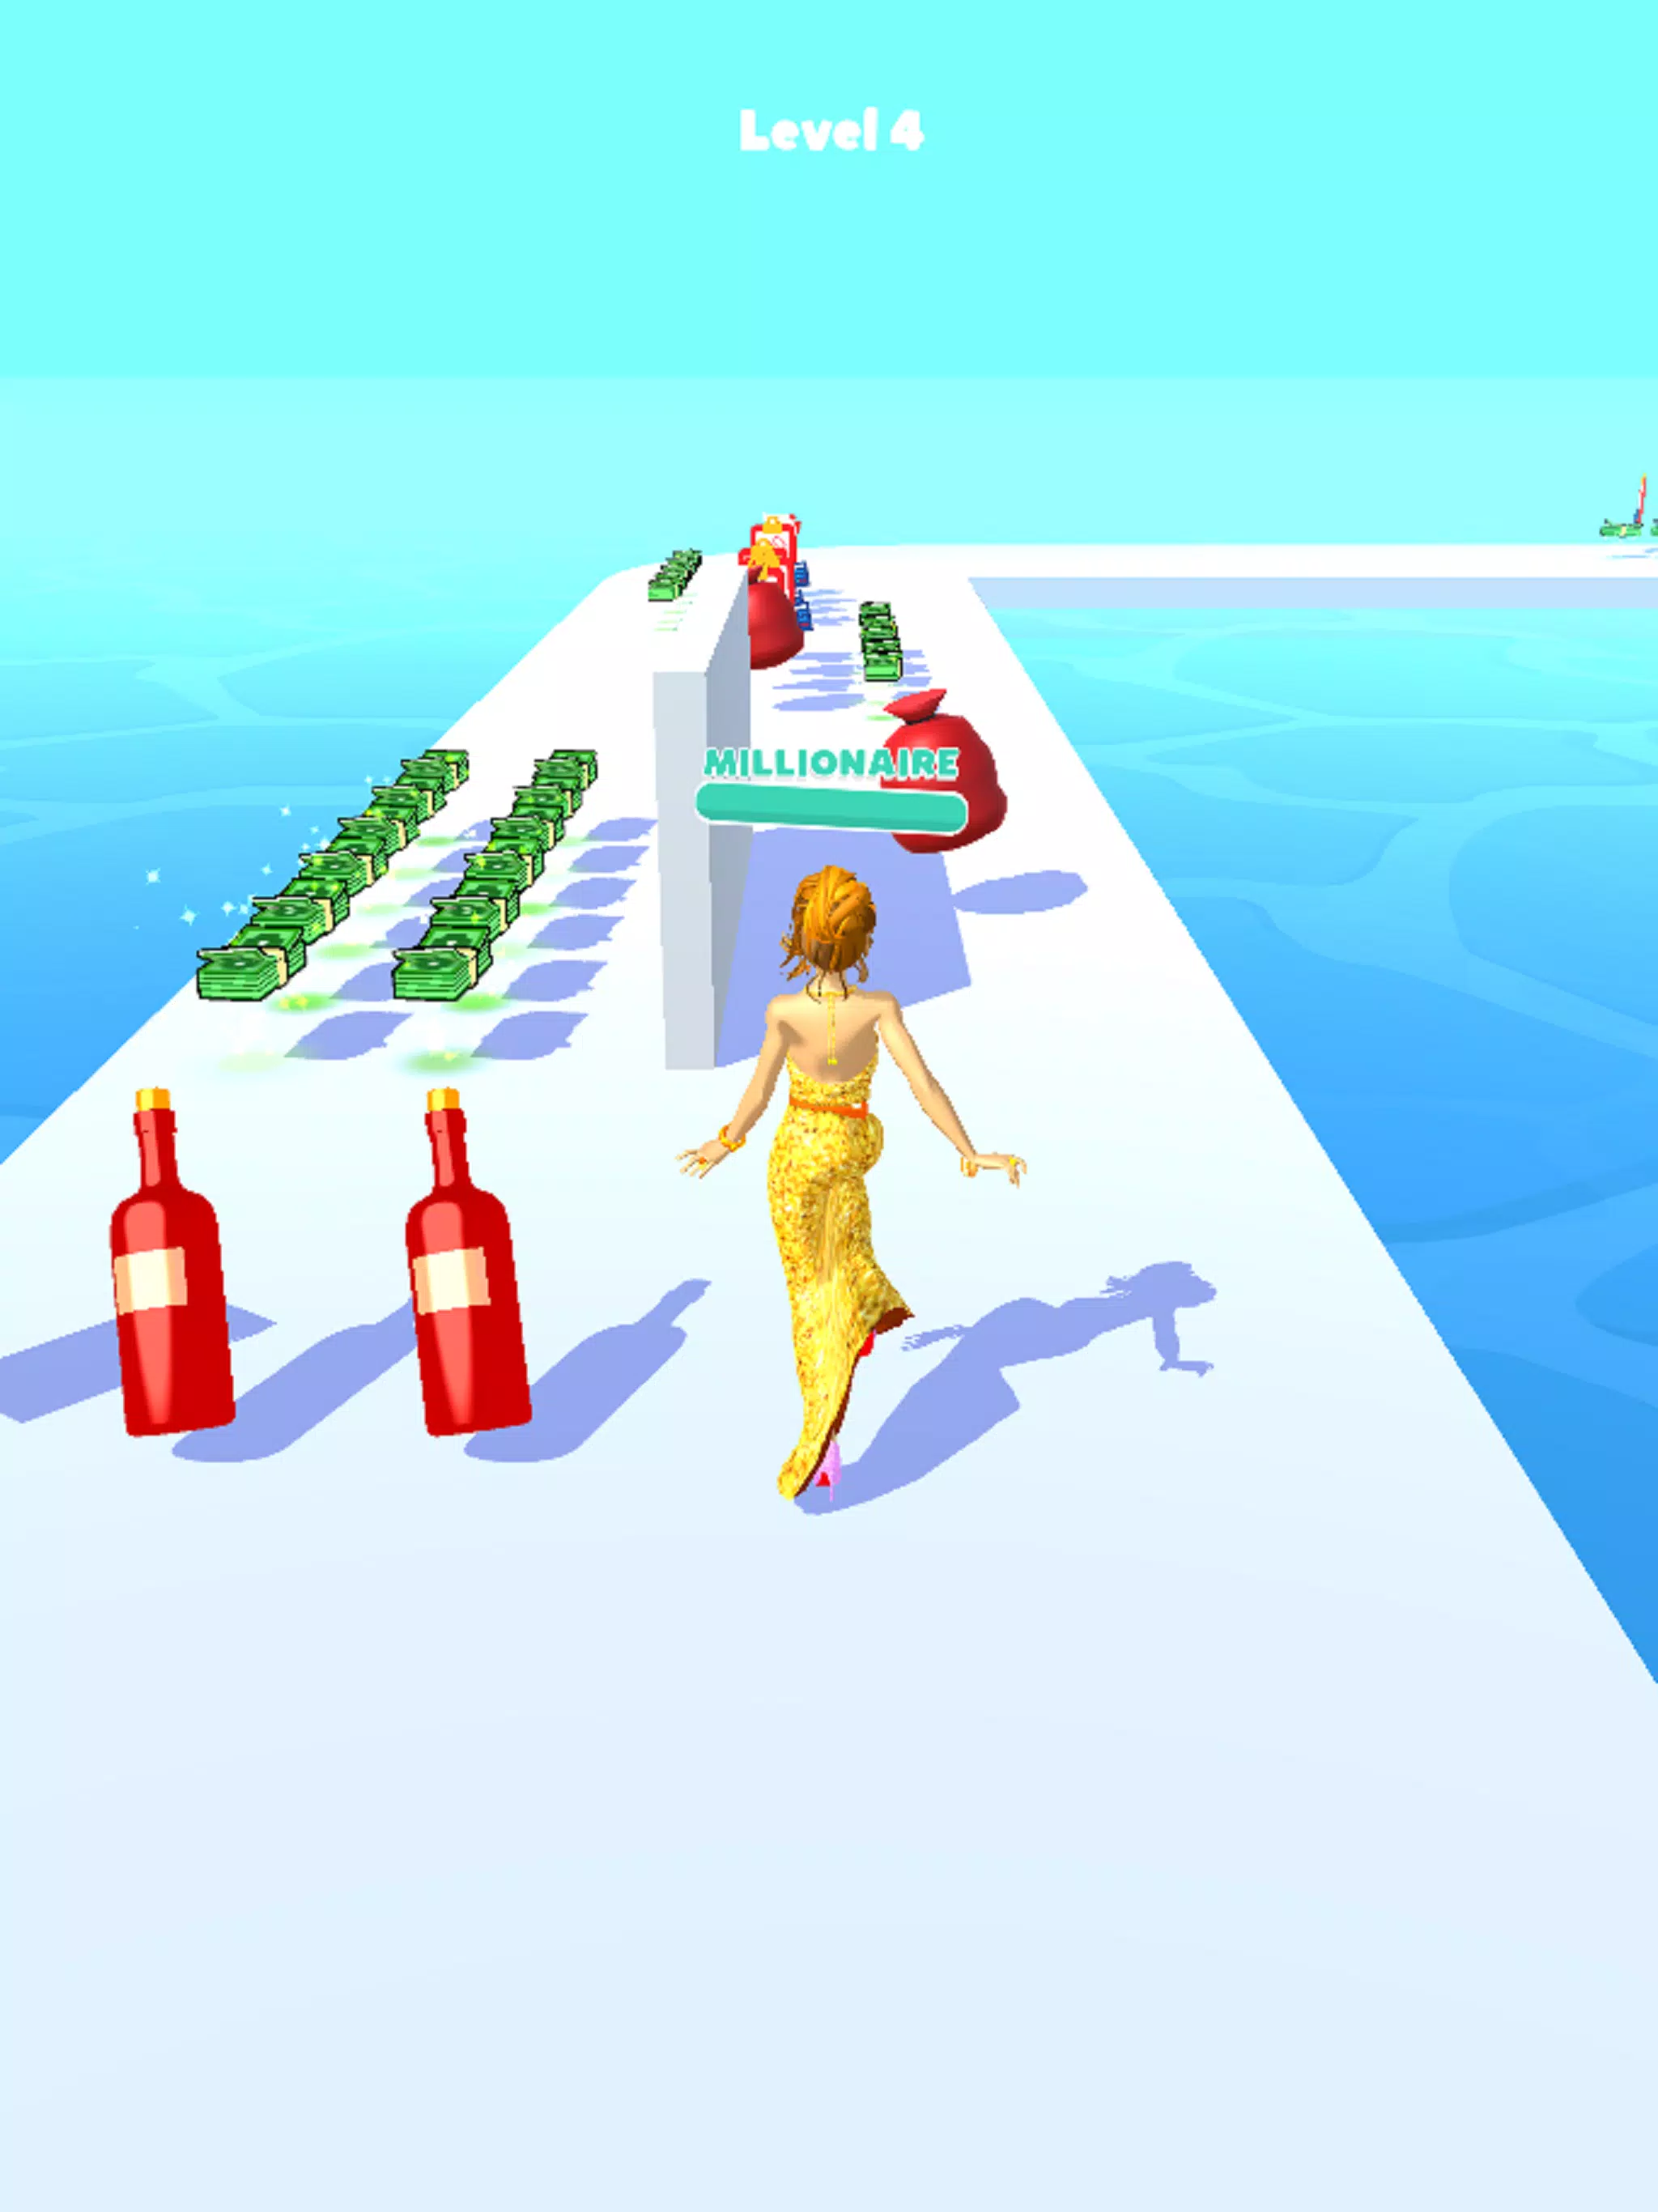 Run Rich 3D 🕹️ Jogue Run Rich 3D Grátis no Jogos123